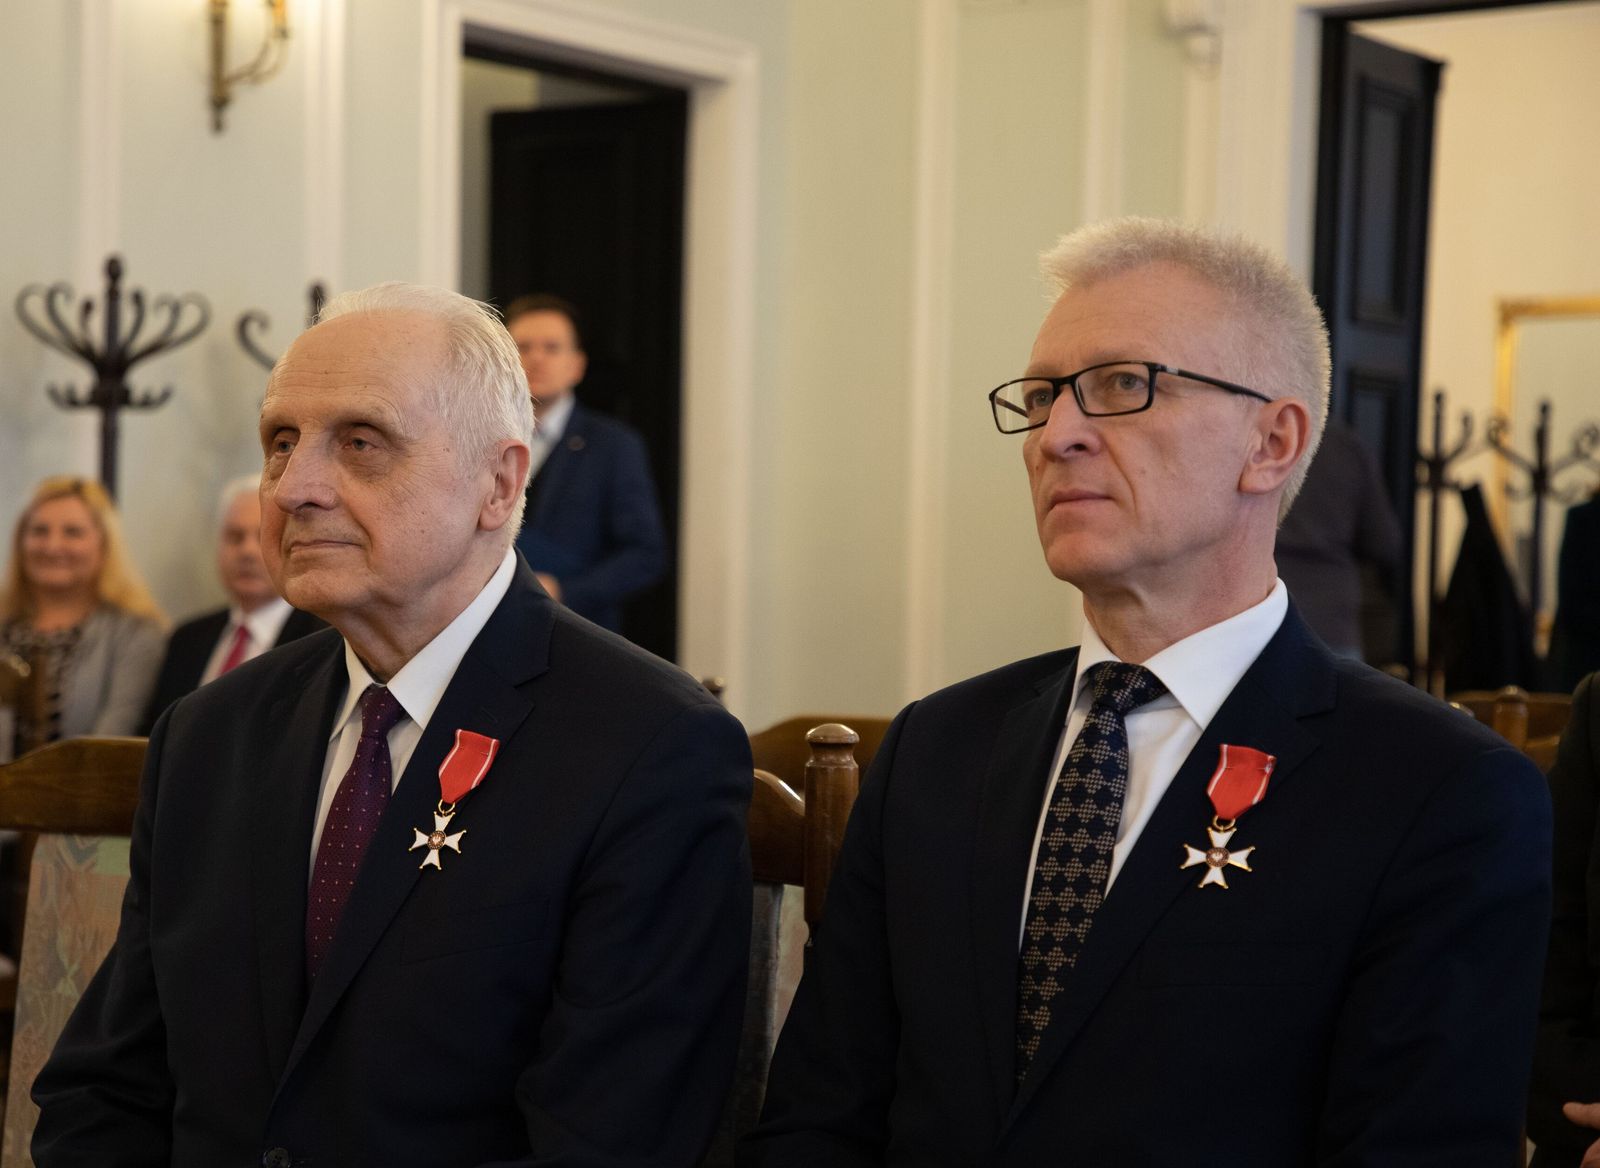 Foto: od lewej prof. dr hab. n. med. Włodzimierz Kargul i prof. dr hab. n. med. Jarosław Kaźmierczak, Puls Medycyny, KM, mat. pras.